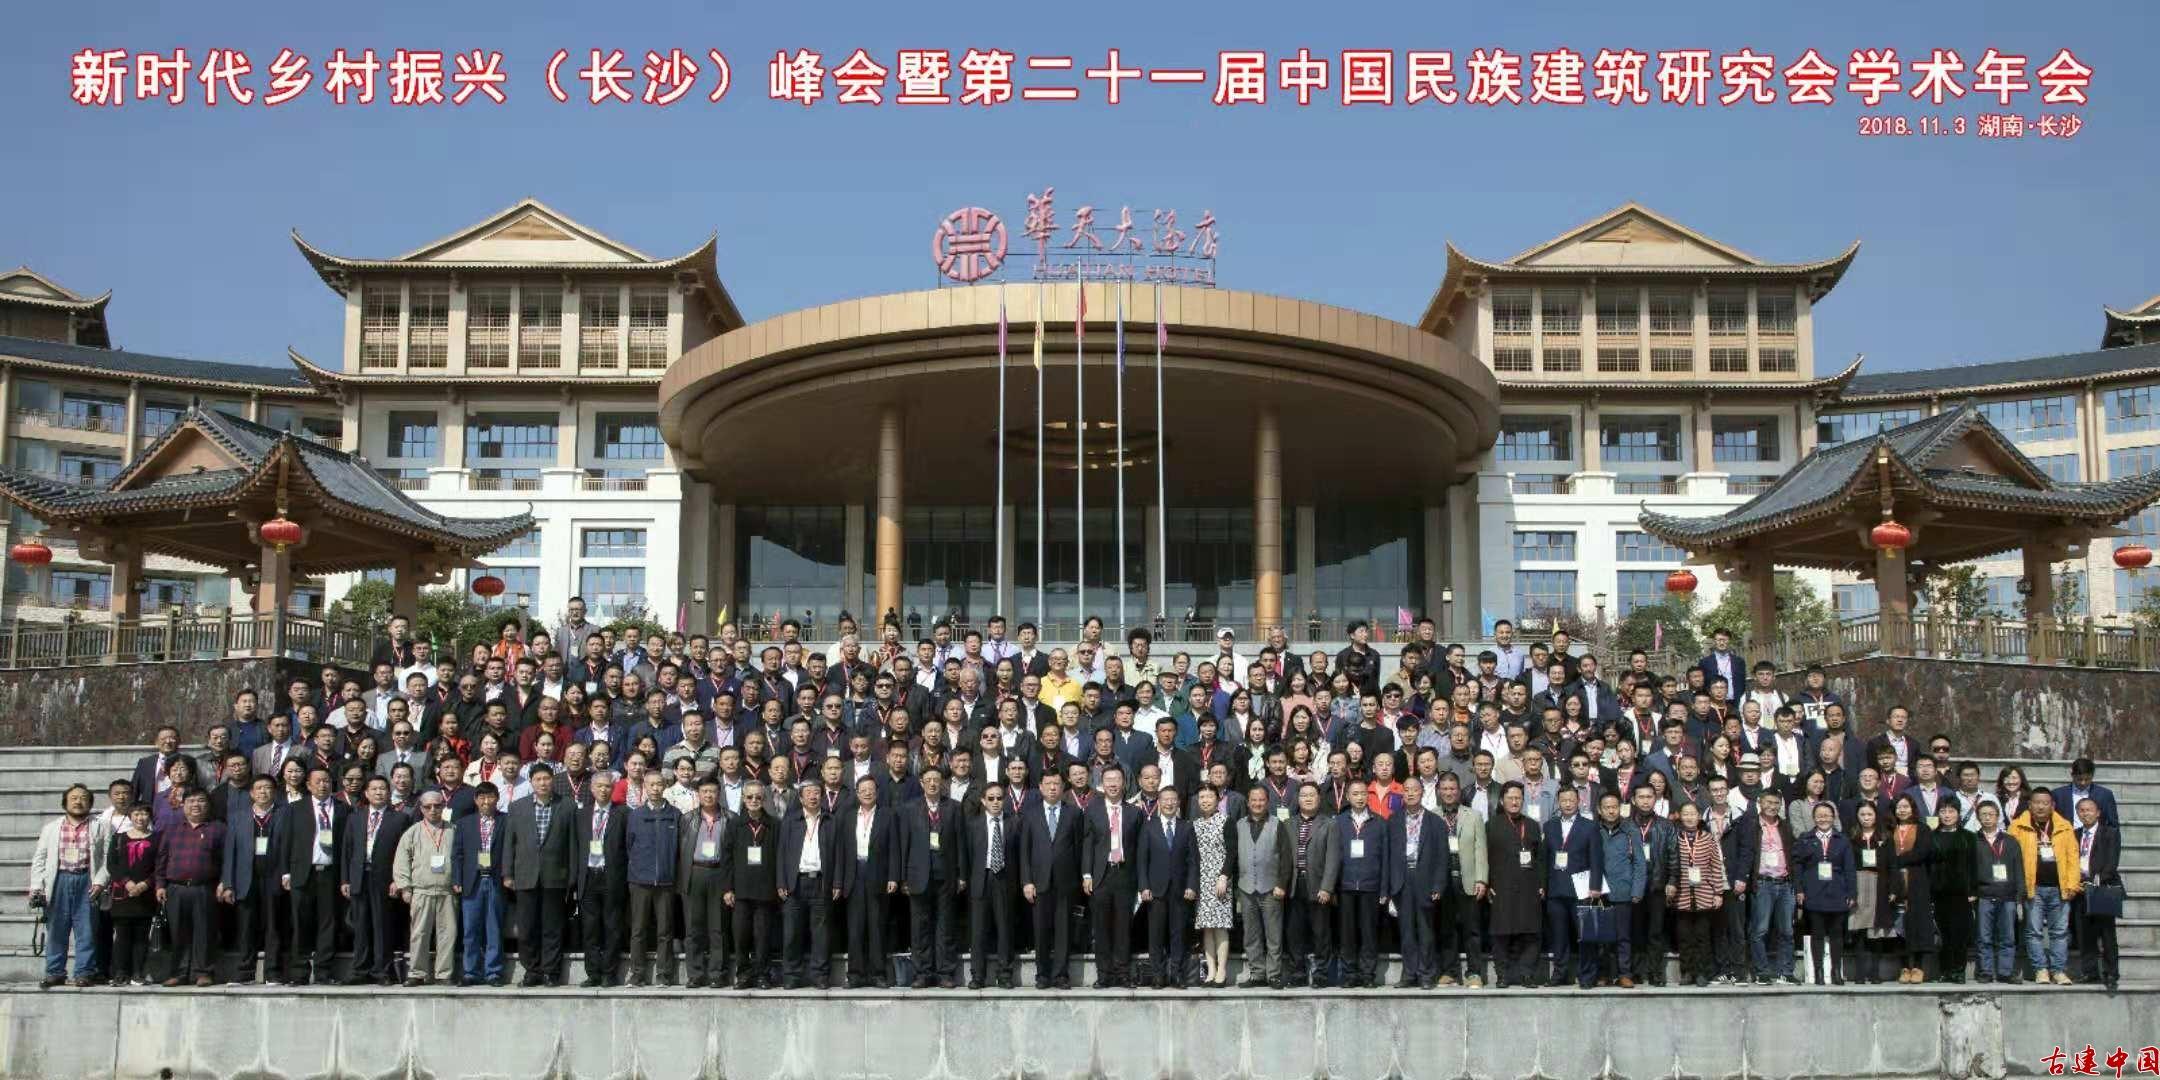 新时代乡村振兴（长沙）峰会暨第二十一届中国民族建筑研究会学术年会胜利召开